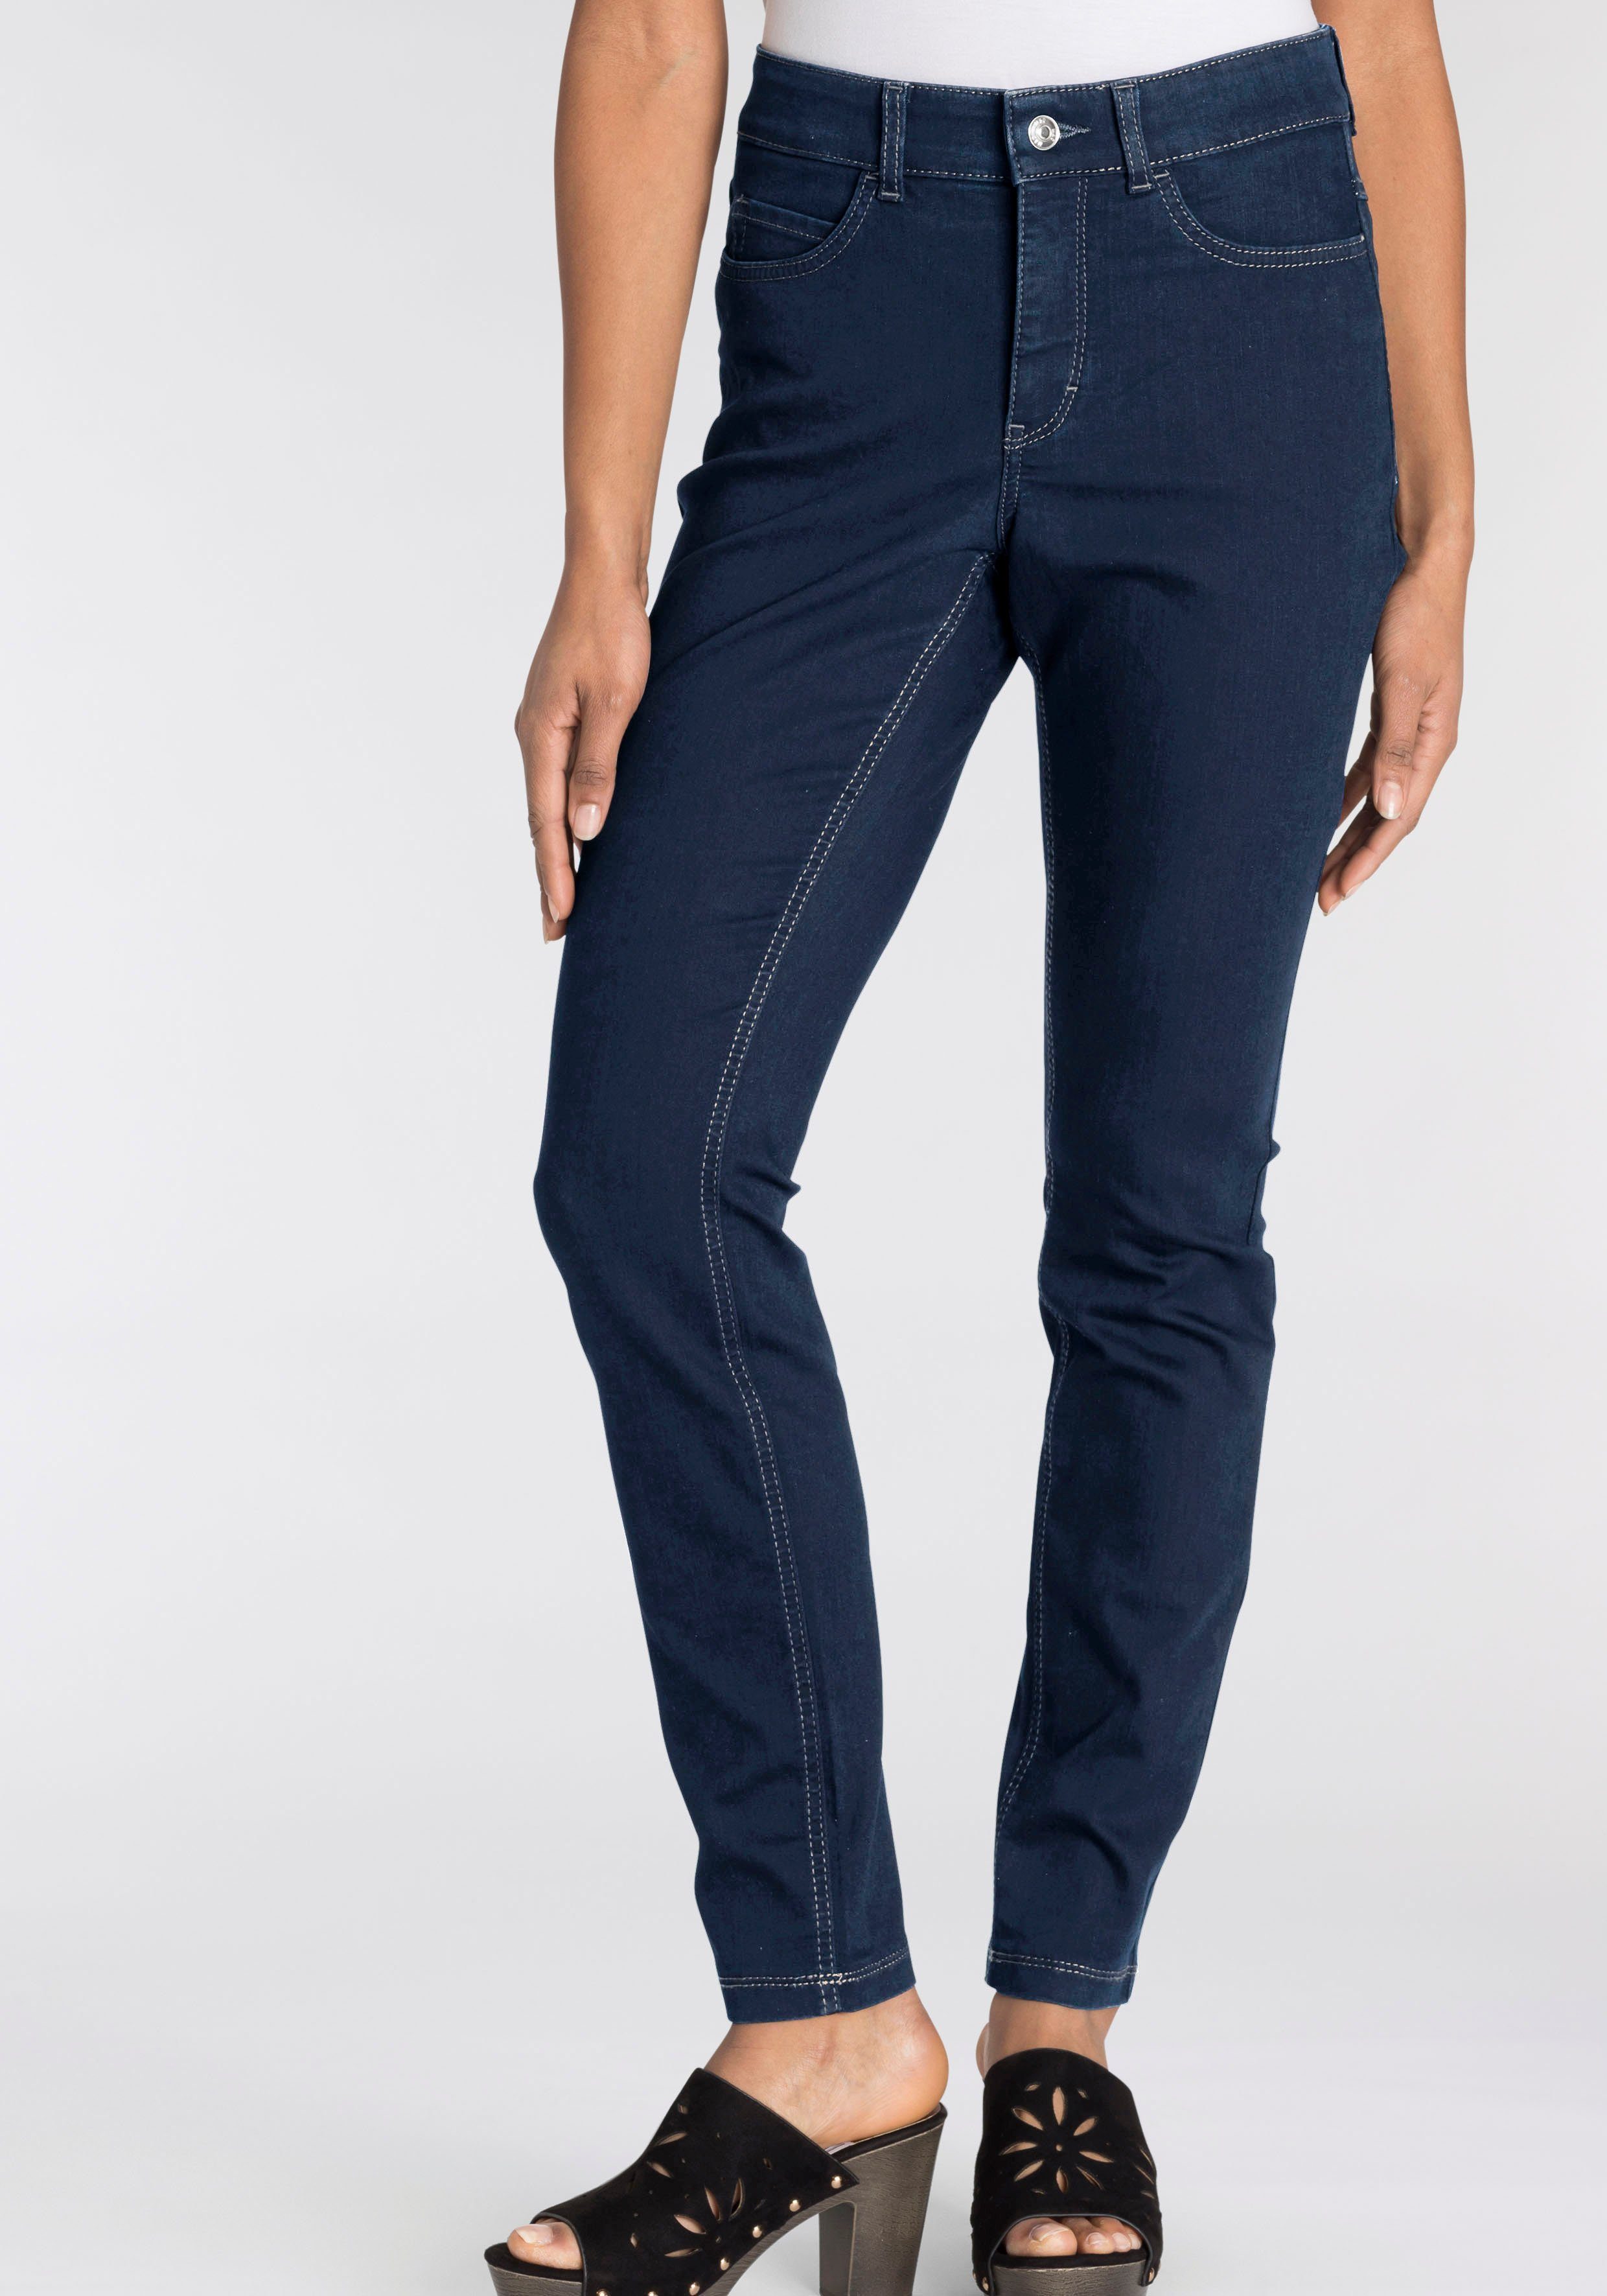 Skinny-fit-Jeans basic wash dark den blue Hiperstretch-Skinny Tag Power-Stretch ganzen bequem new Qualität MAC sitzt